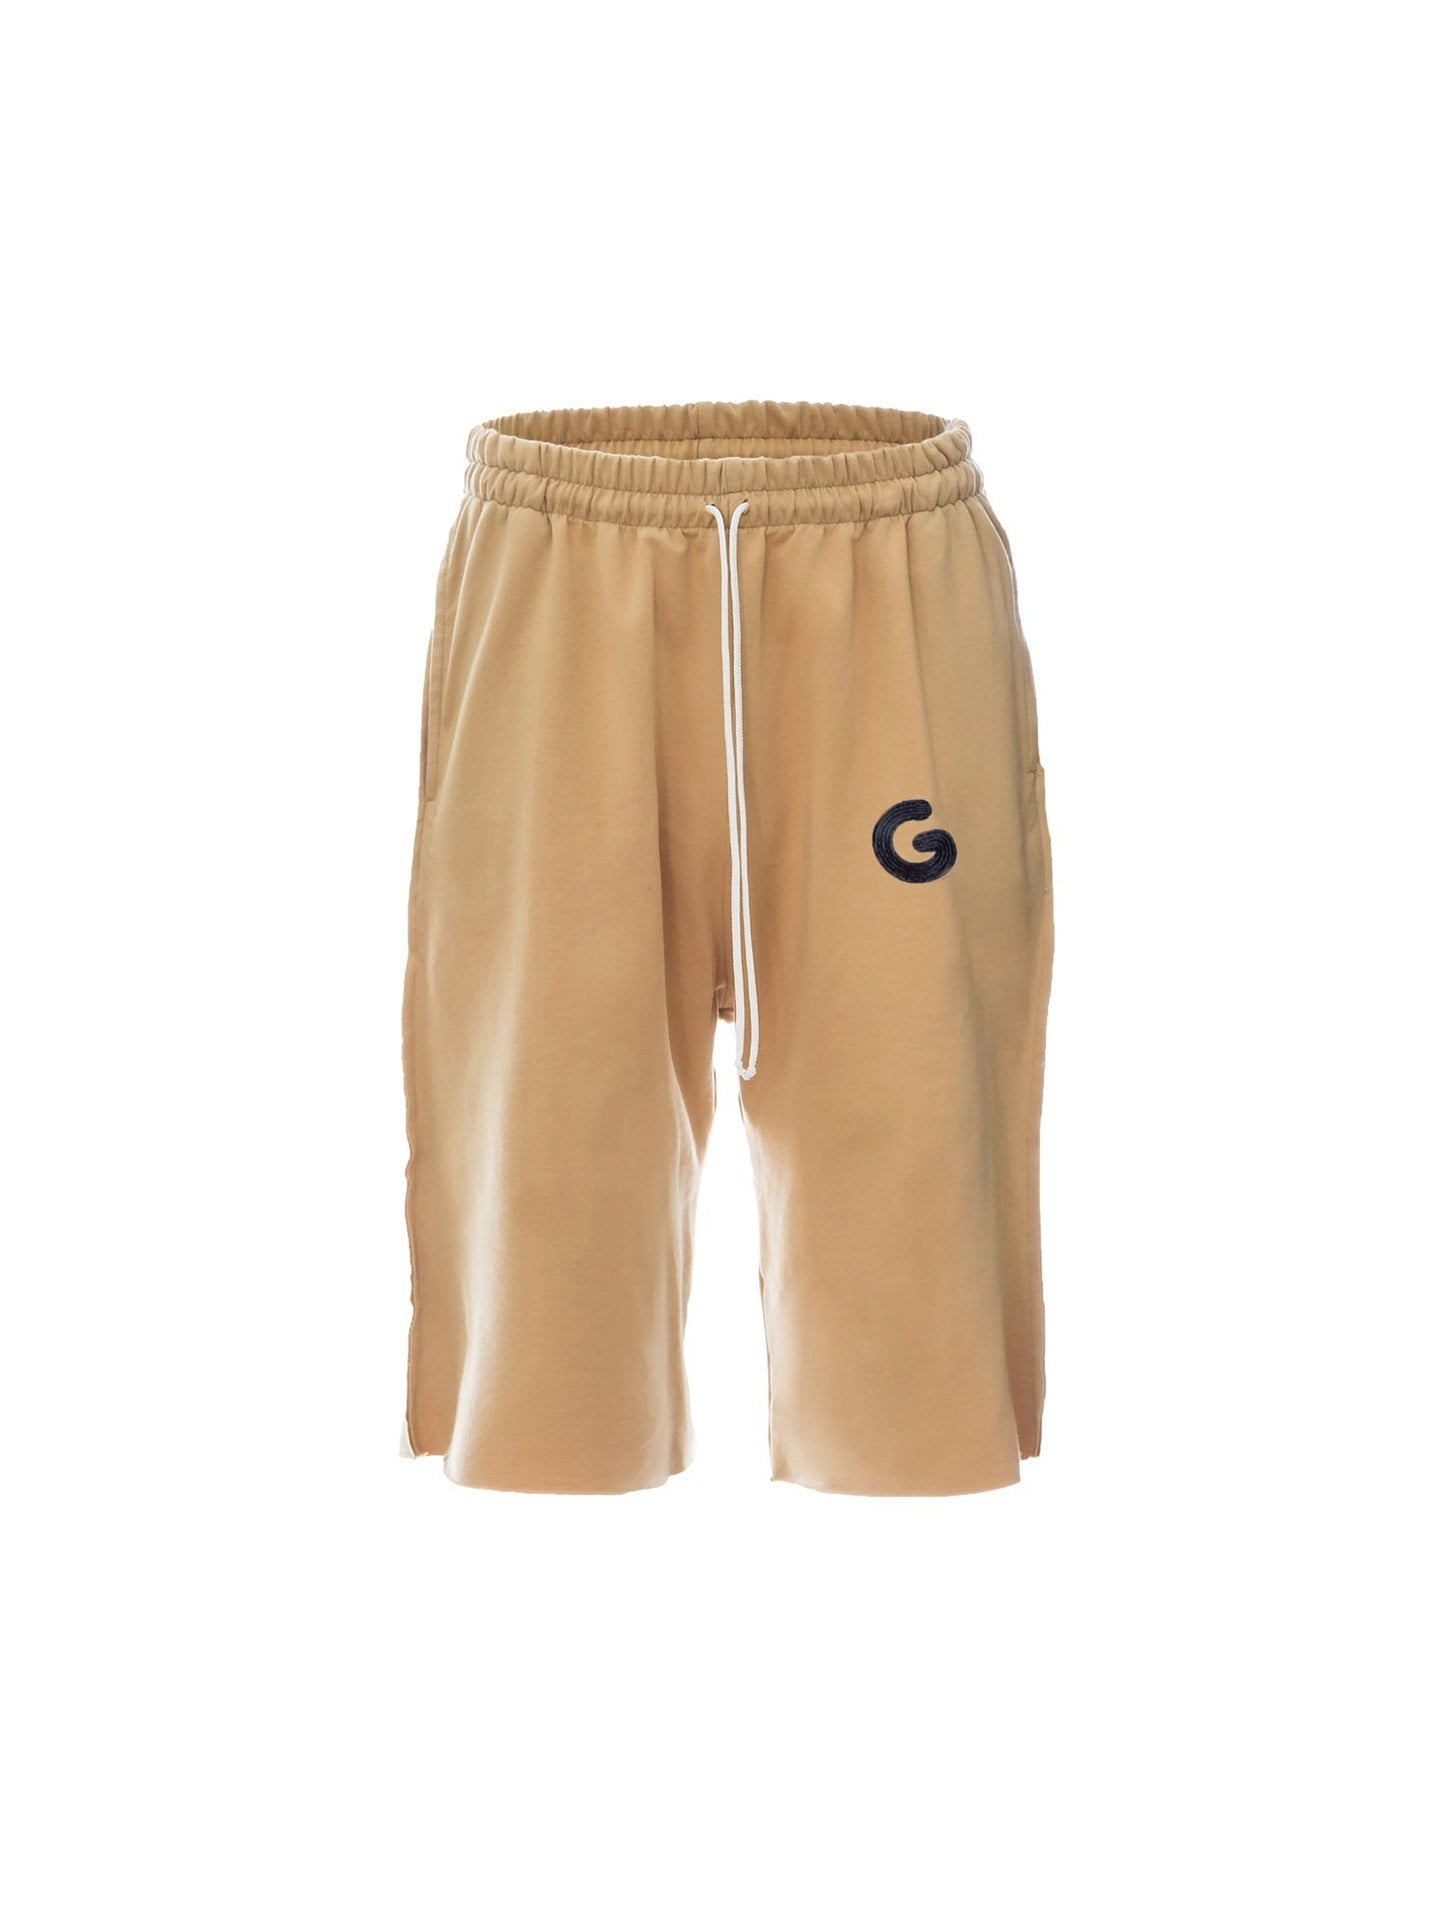 TheG Essential Shorts // béžové